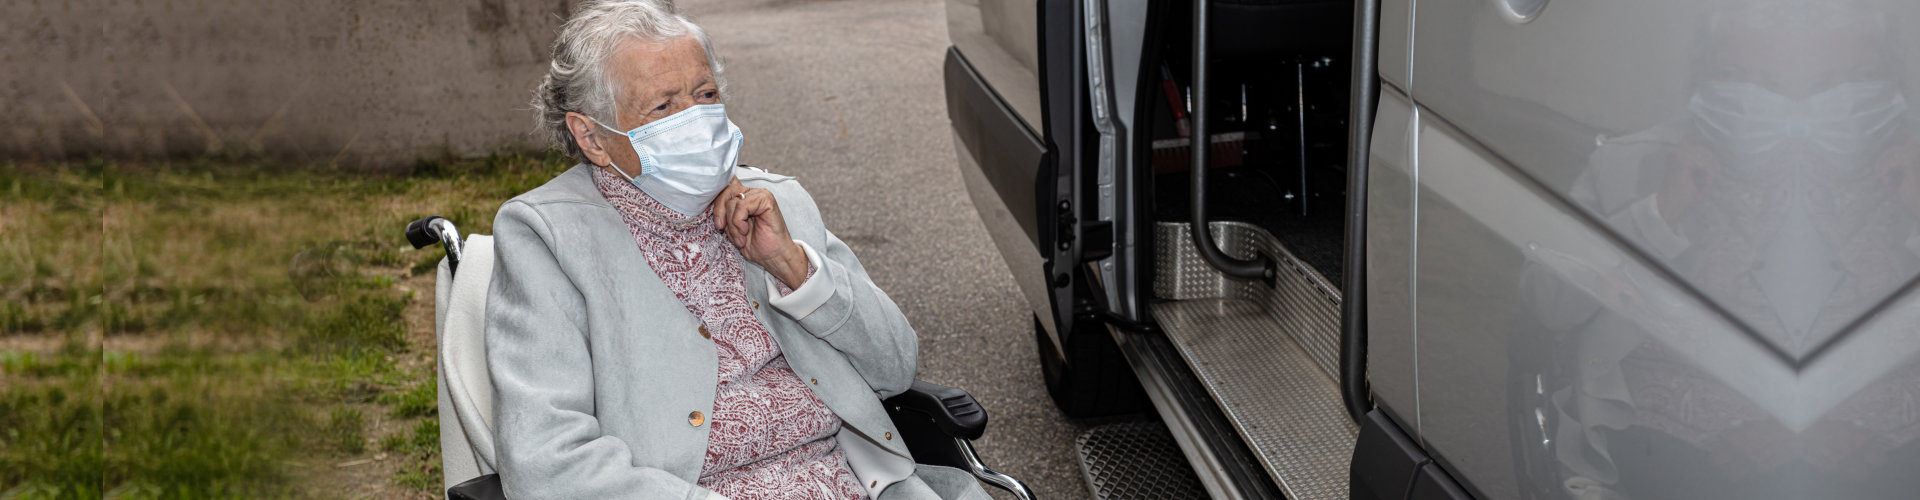 elderly woman preparing to board on a van